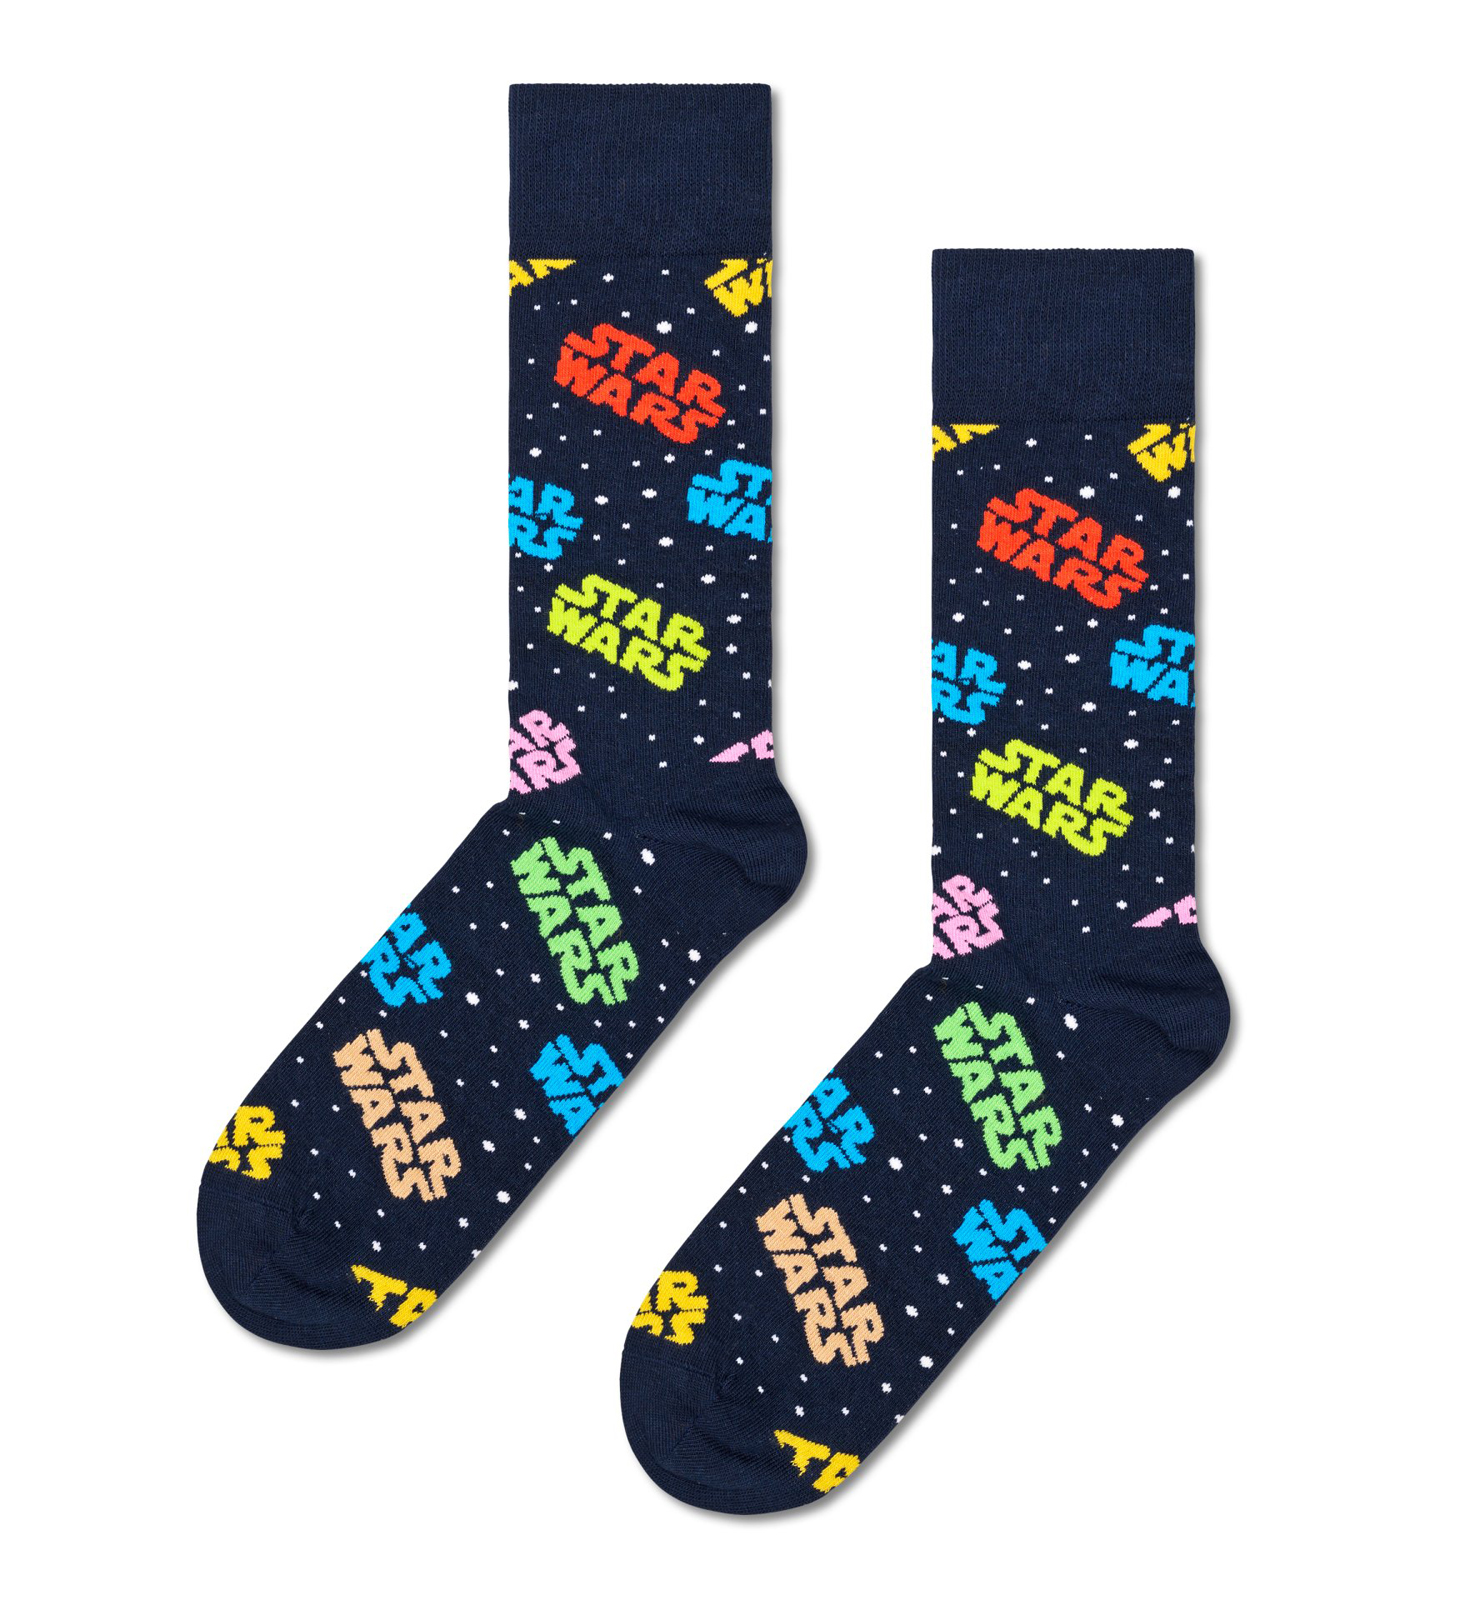 Happy socks - STAR WARS™ SOCK - MULTI